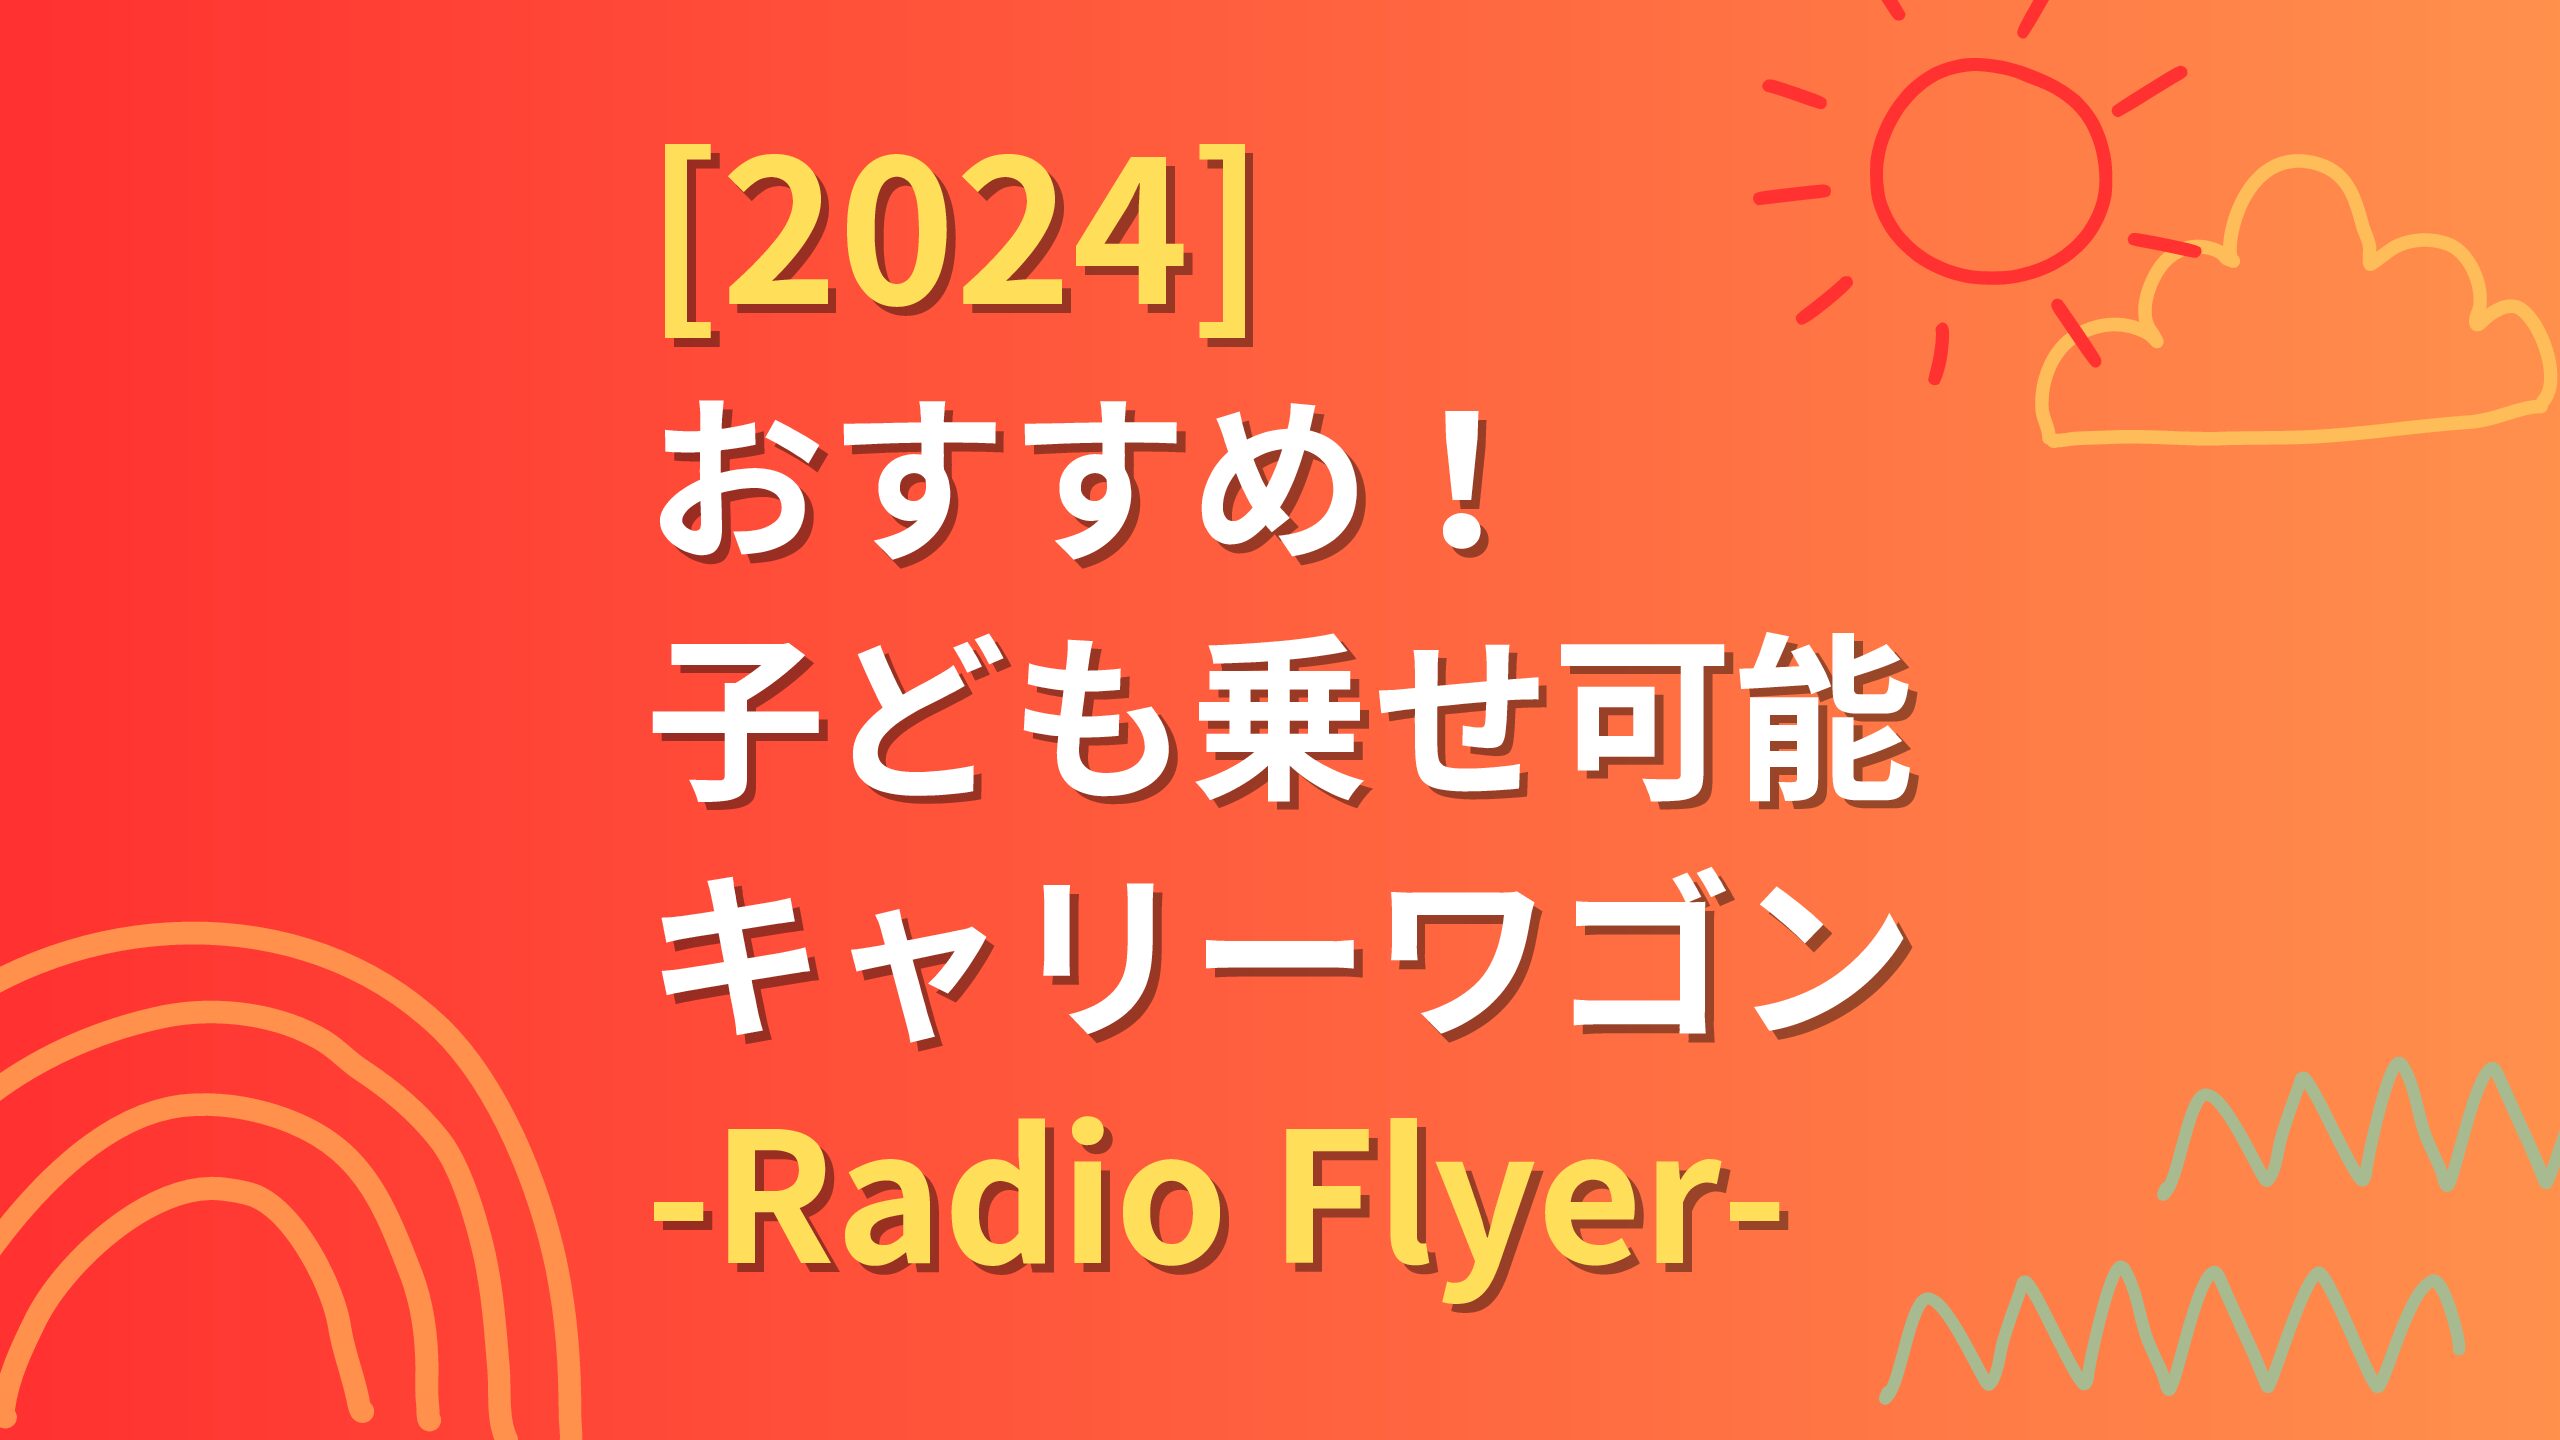 2024】子ども乗せ可能なワゴン/Radio Flyer(ラジオフライヤー)が ...